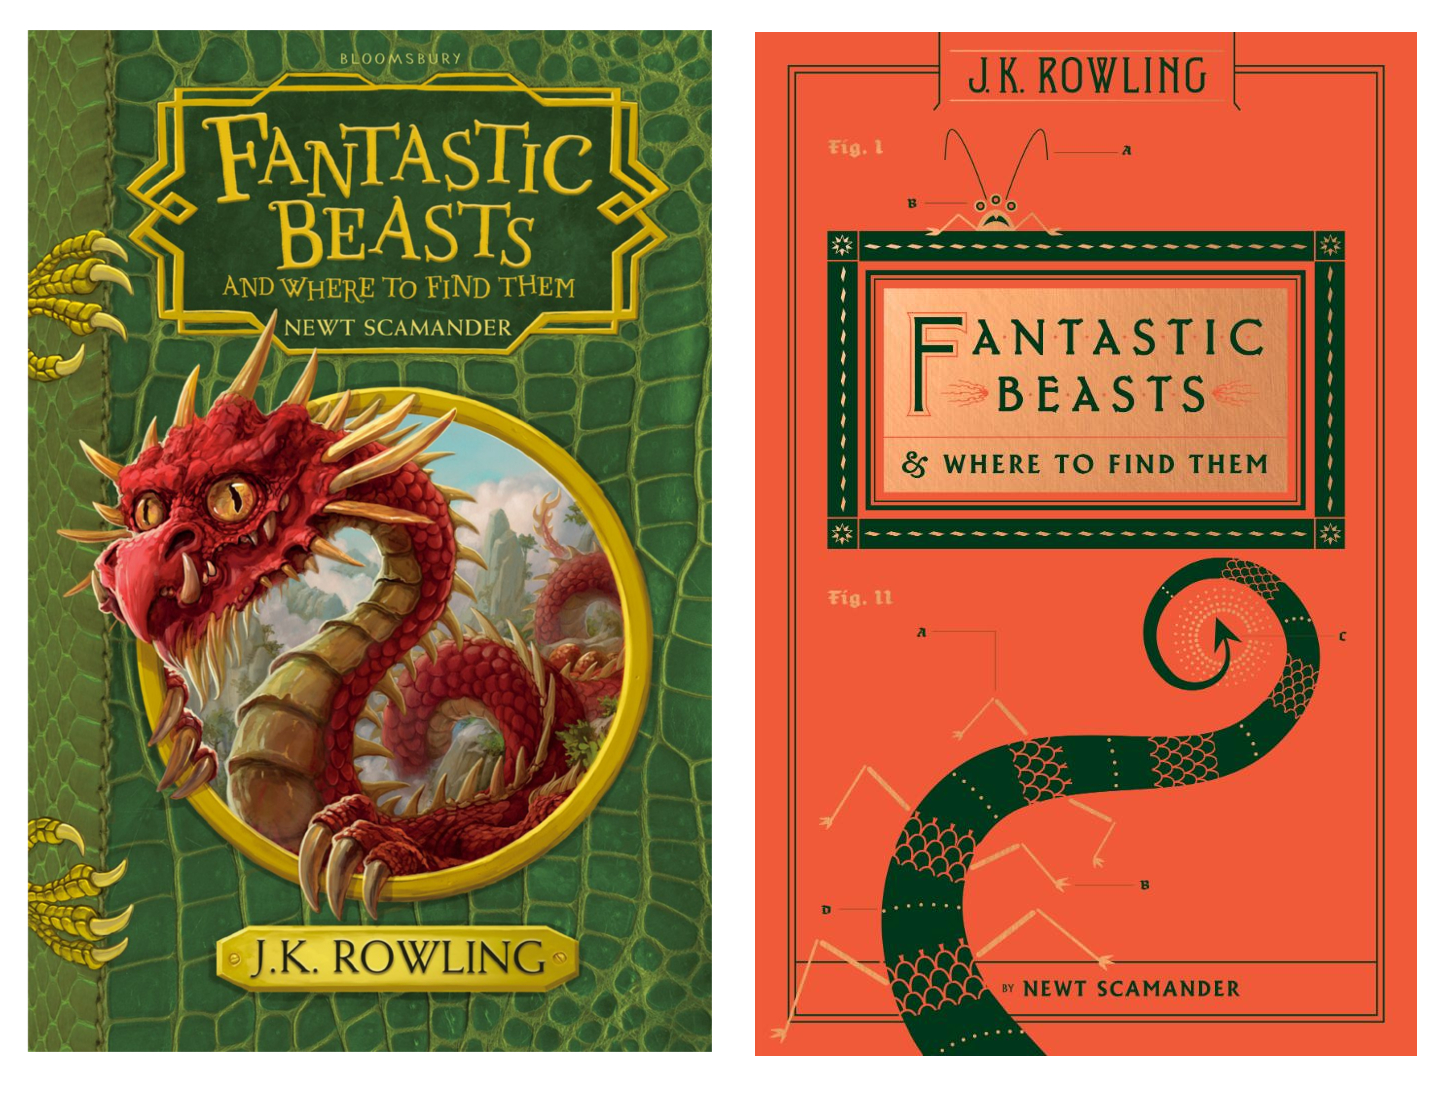 Nowe Wydania Fantastycznych Zwierzat A Wraz Z Nimi 6 Nowych Stworzen Do Kolekcji Newta Co Przeczytac